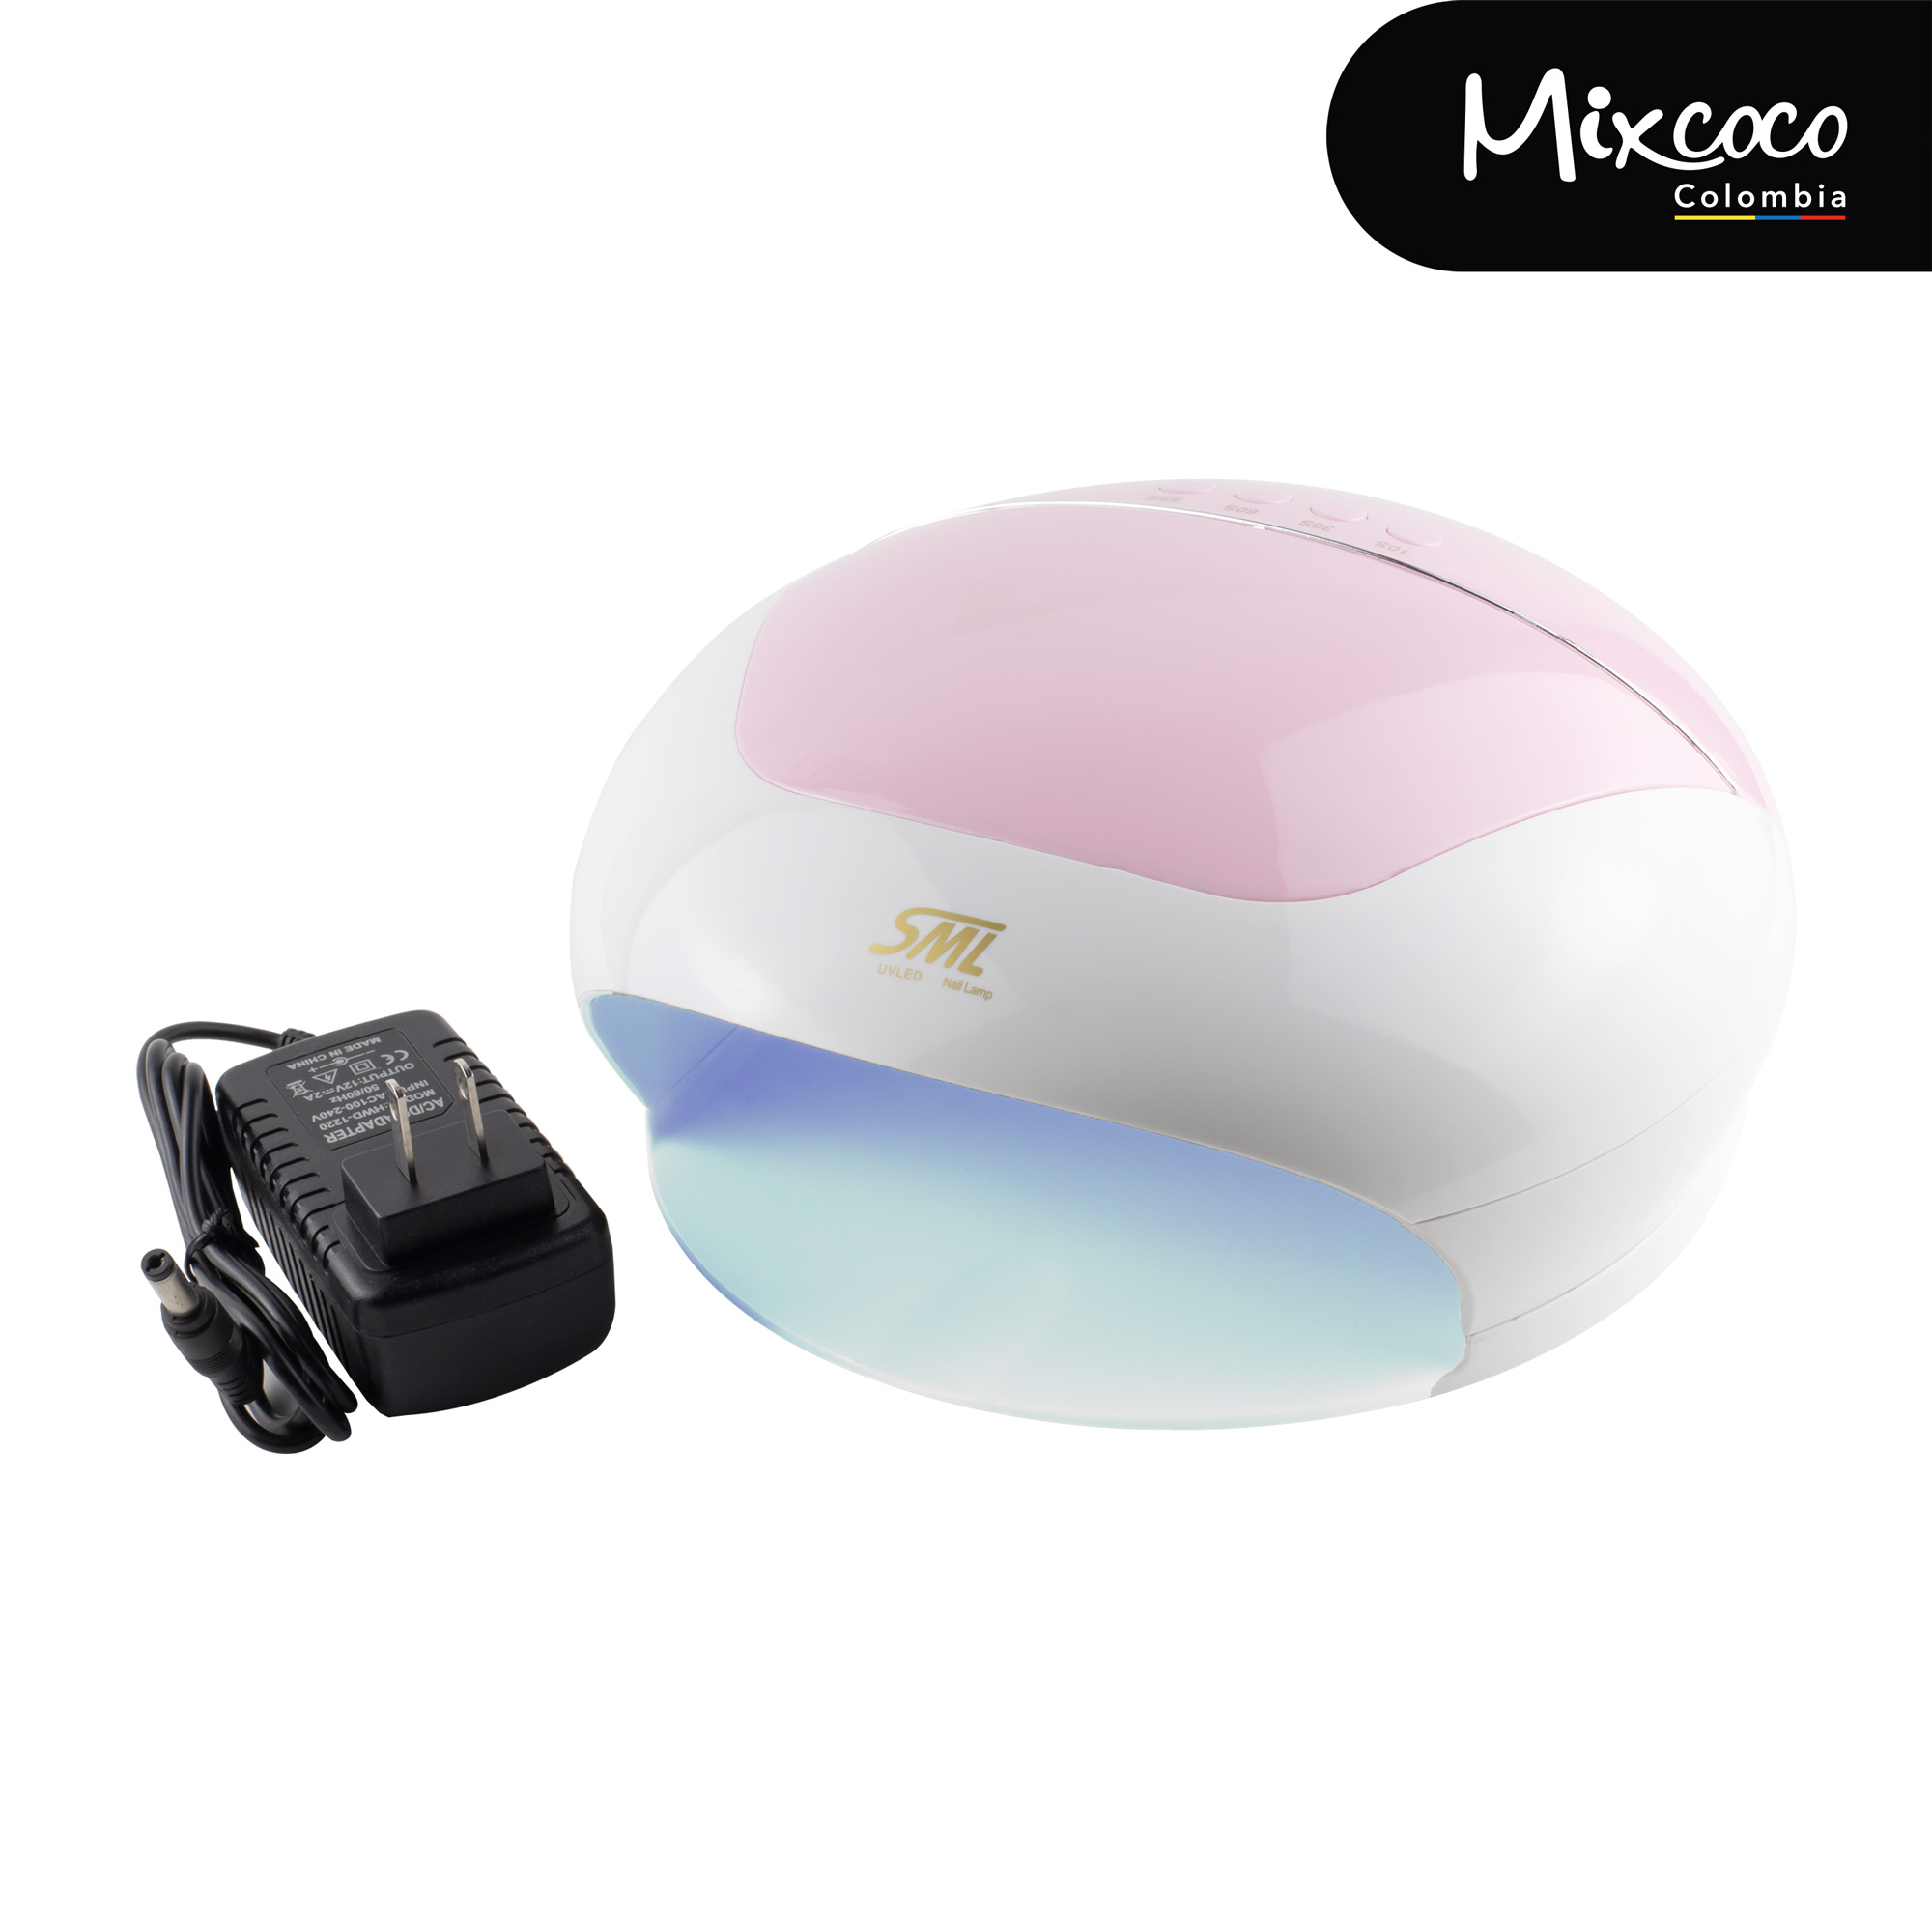 Lámpara UV/LED S9 SML Mixcoco 110w rosada